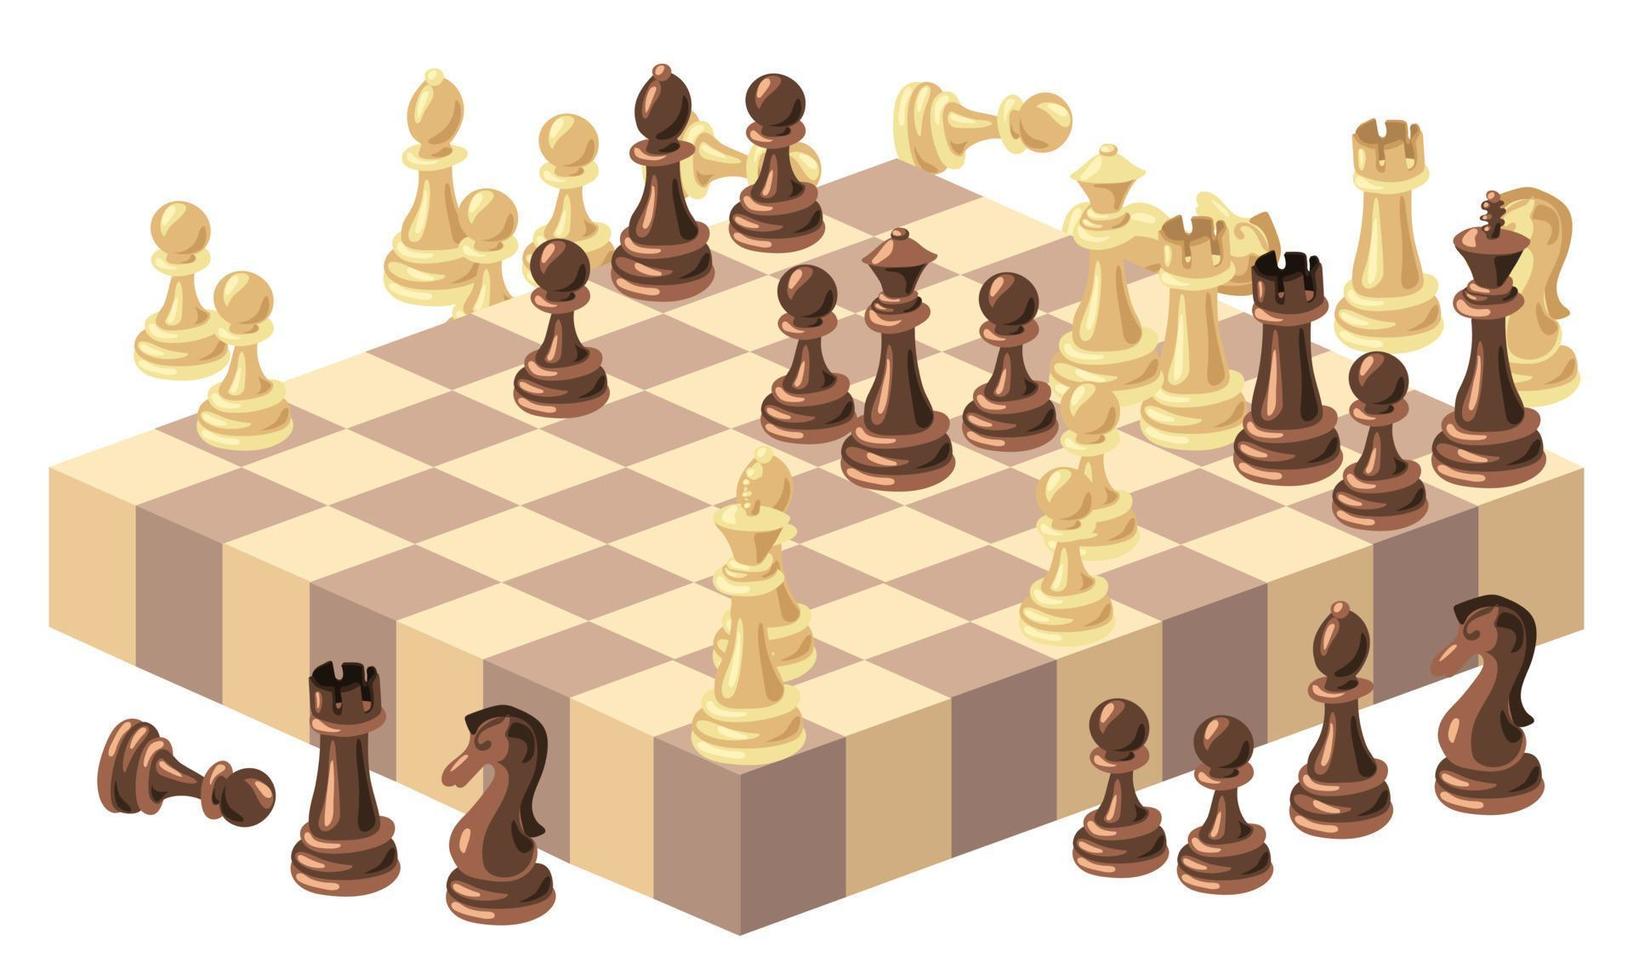 ajedrez isométrica ver de piezas en un de madera tablero de ajedrez es un estratégico Deportes juego. vector ilustración. ajedrez dibujos animados, ajedrez tablero. blanco y negro de madera ajedrez. a cuadros tablero y ligero y oscuro